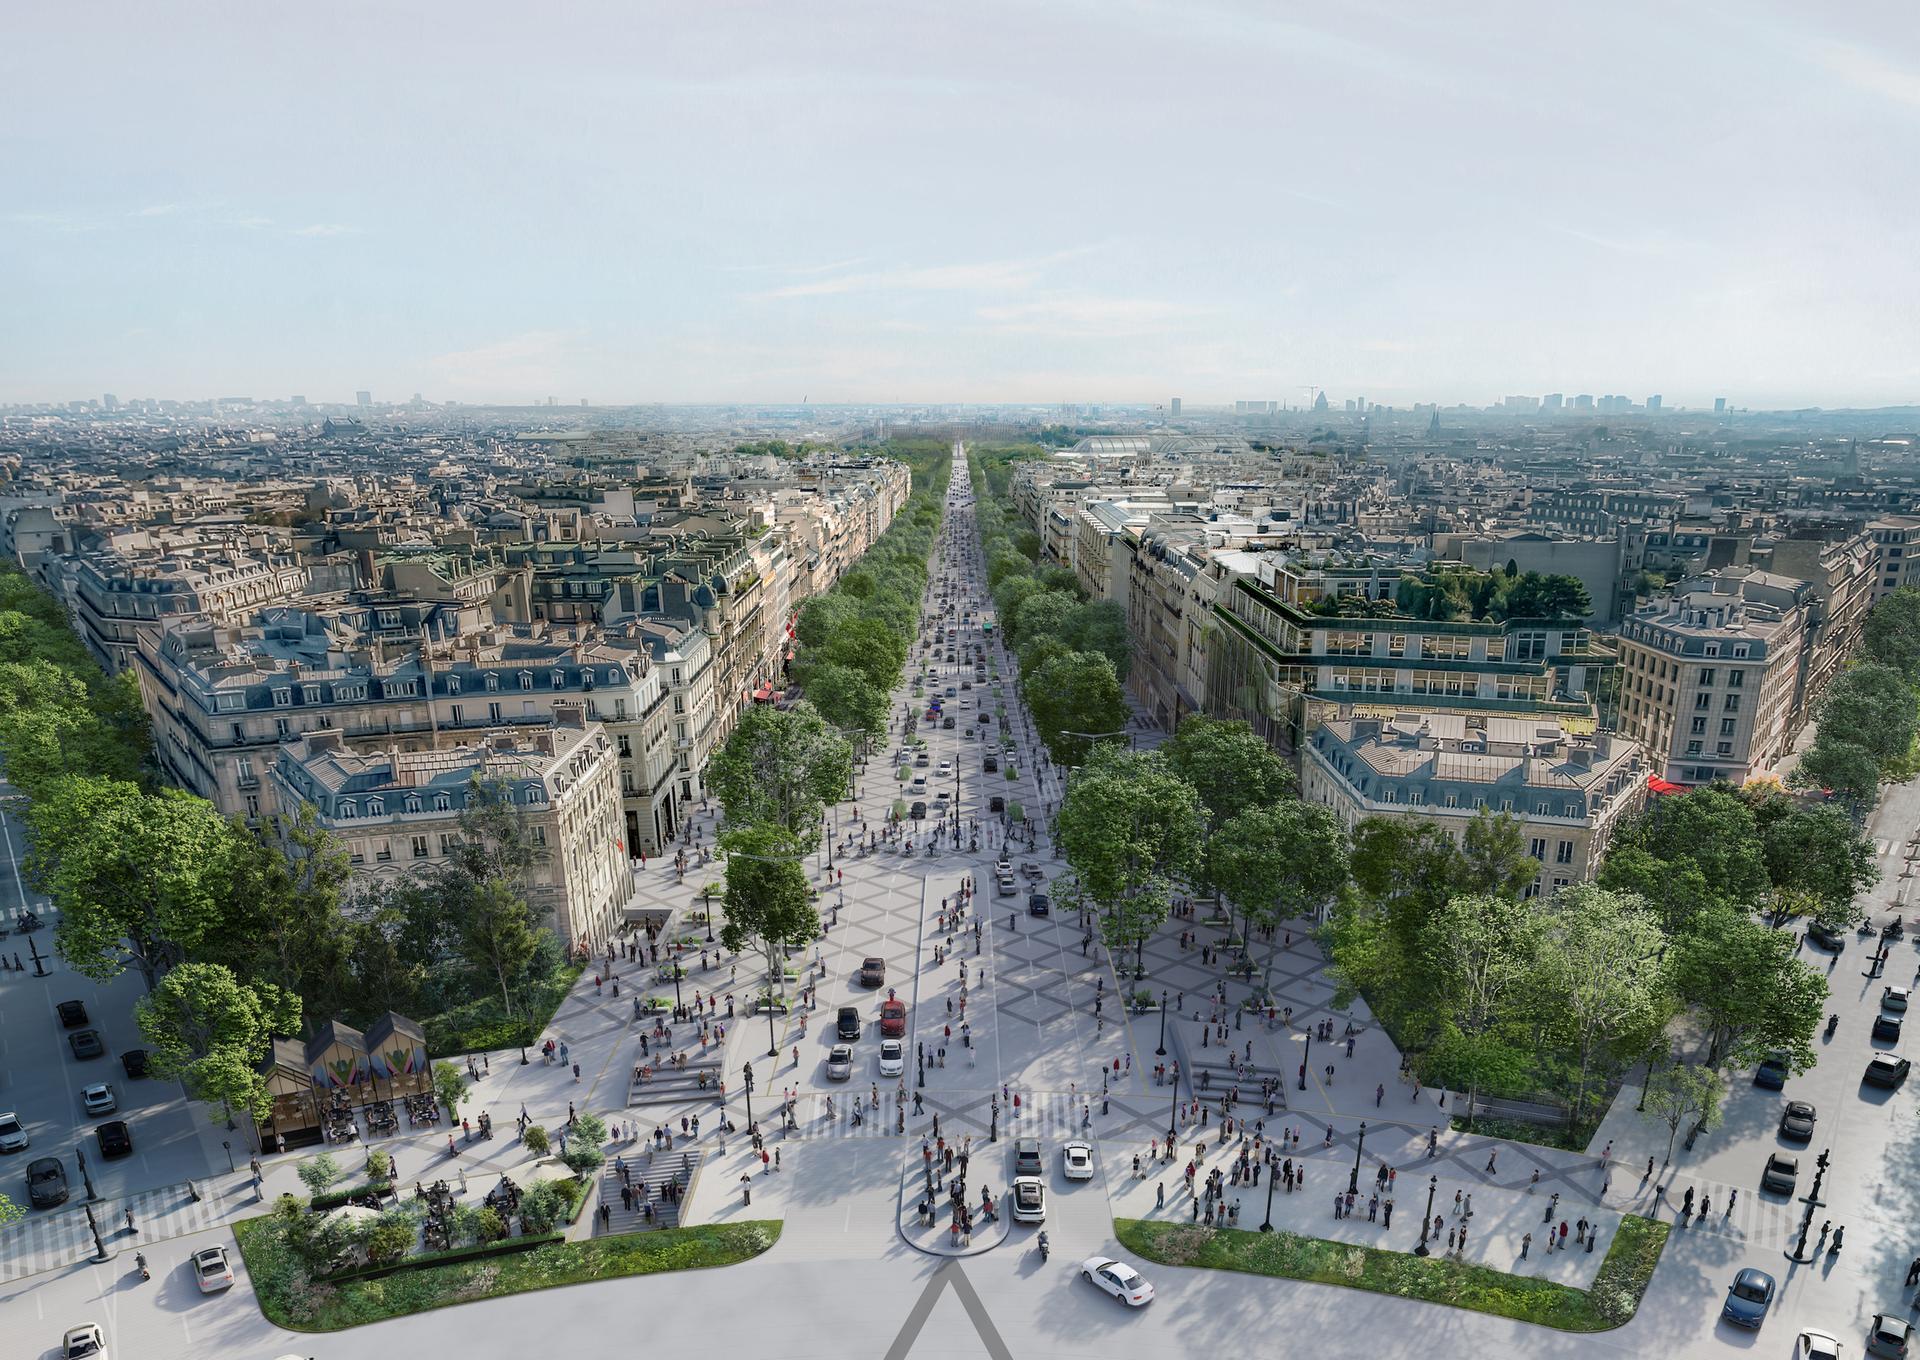 Paris to Turn Champs-Élysées into Expansive Urban Garden